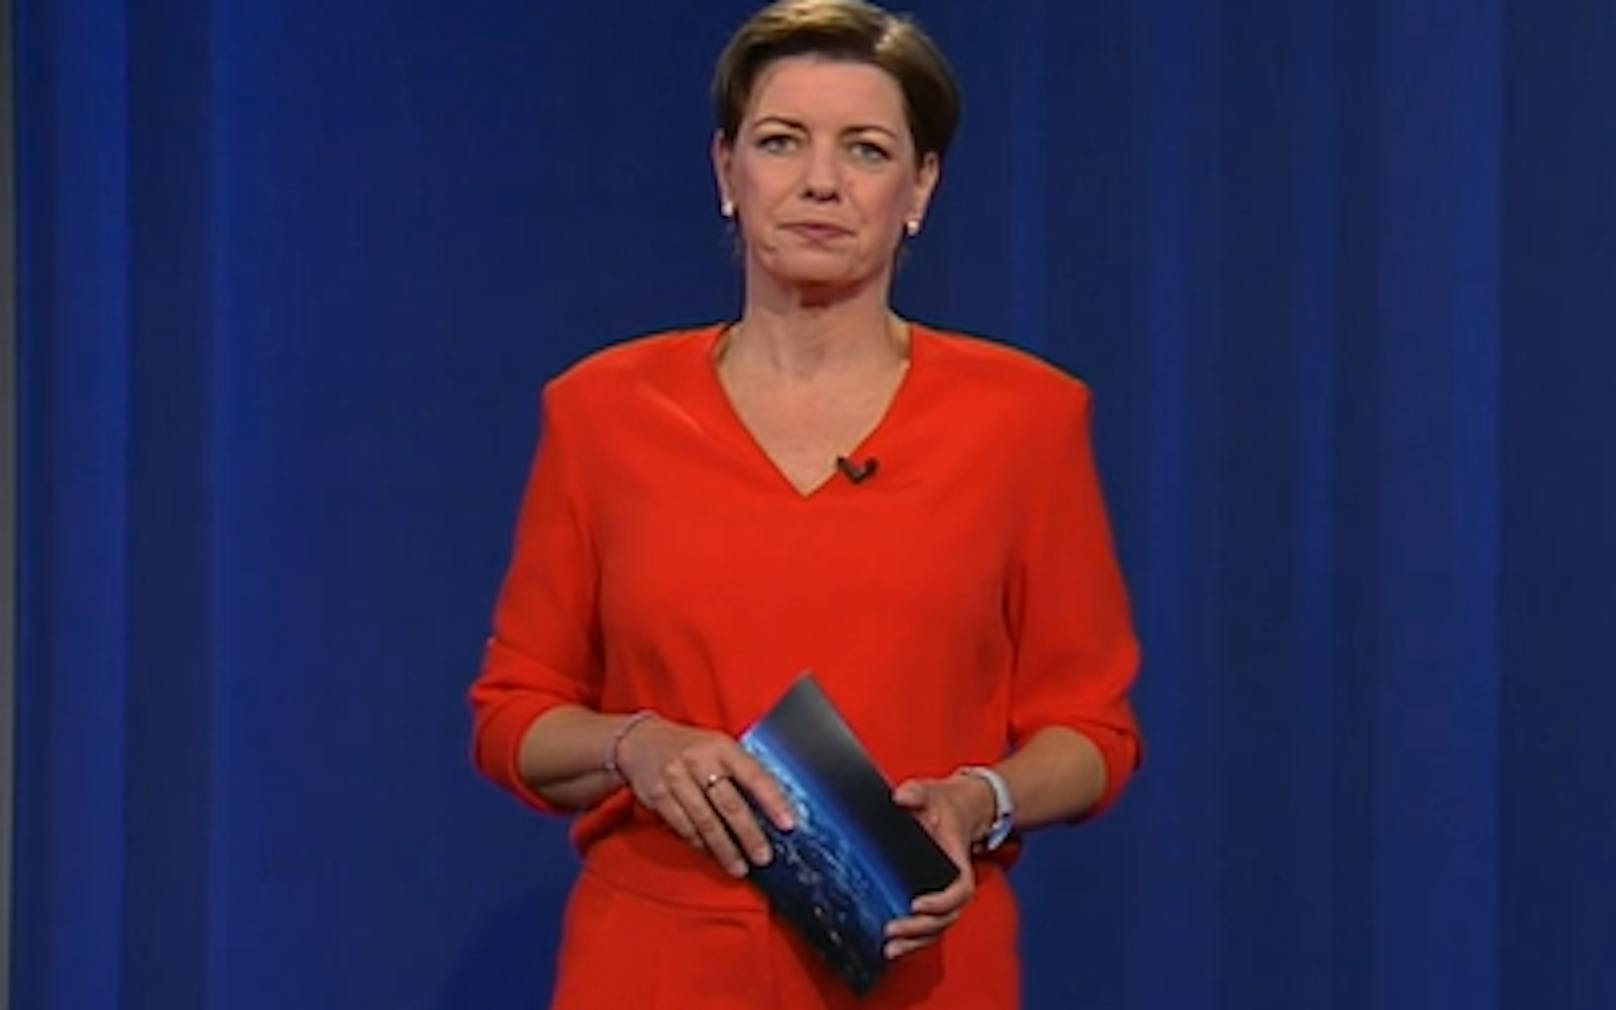 Bekam bei ihrer Live-Schaltung kein Bild eingeblendet: ORF-Moderatorin Marie-Claire Zimmermann.